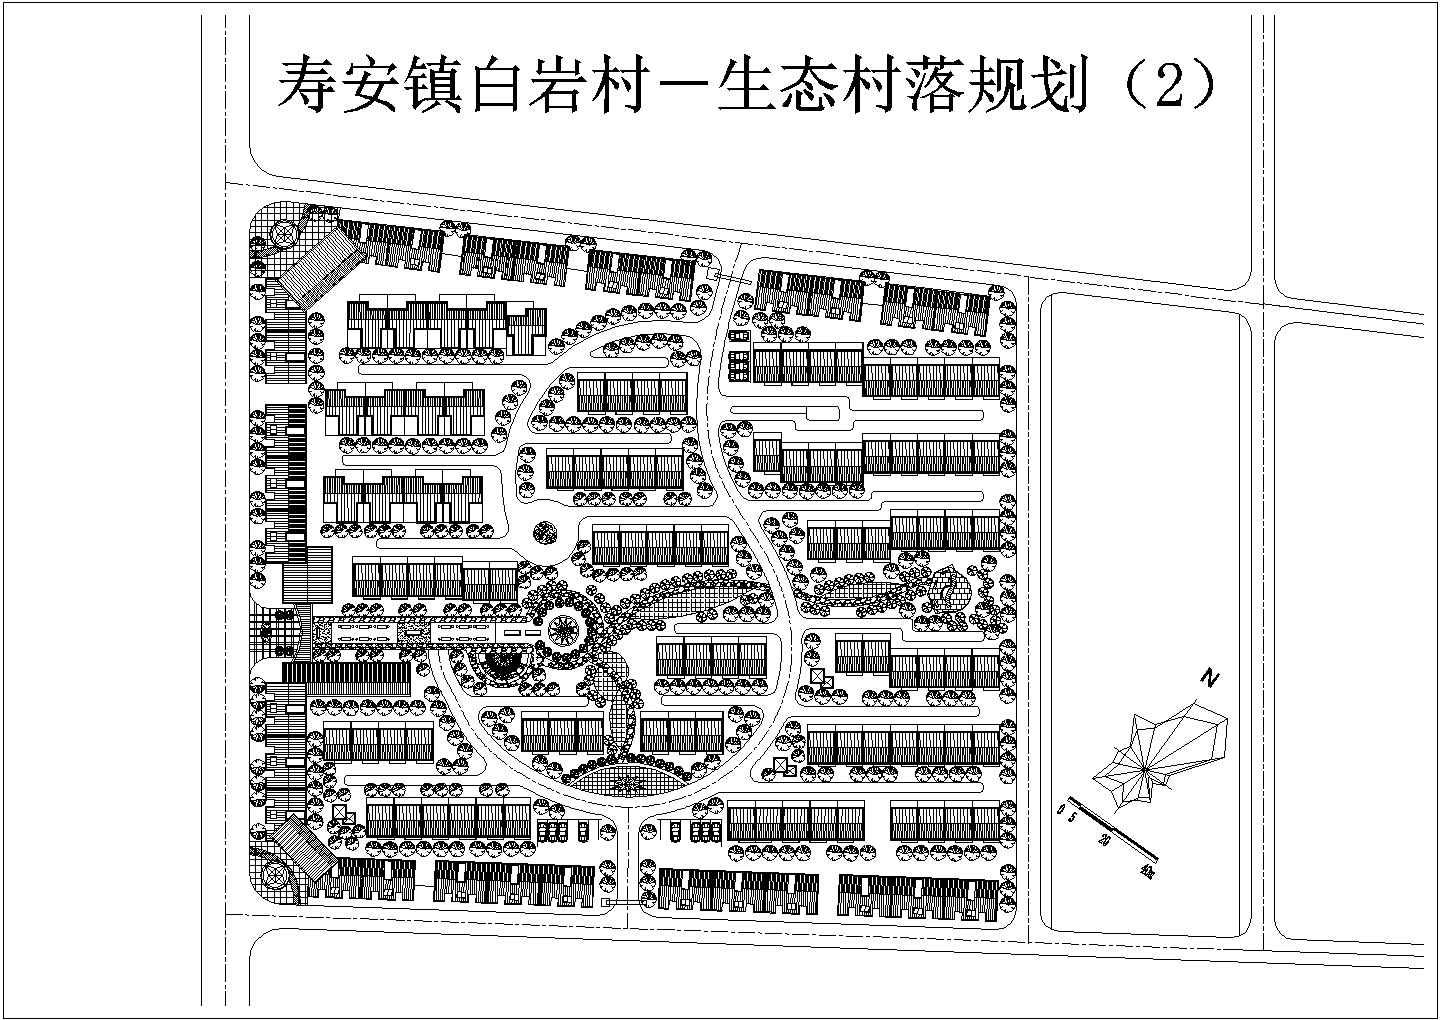 寿安镇白岩村生态村落规划施工图